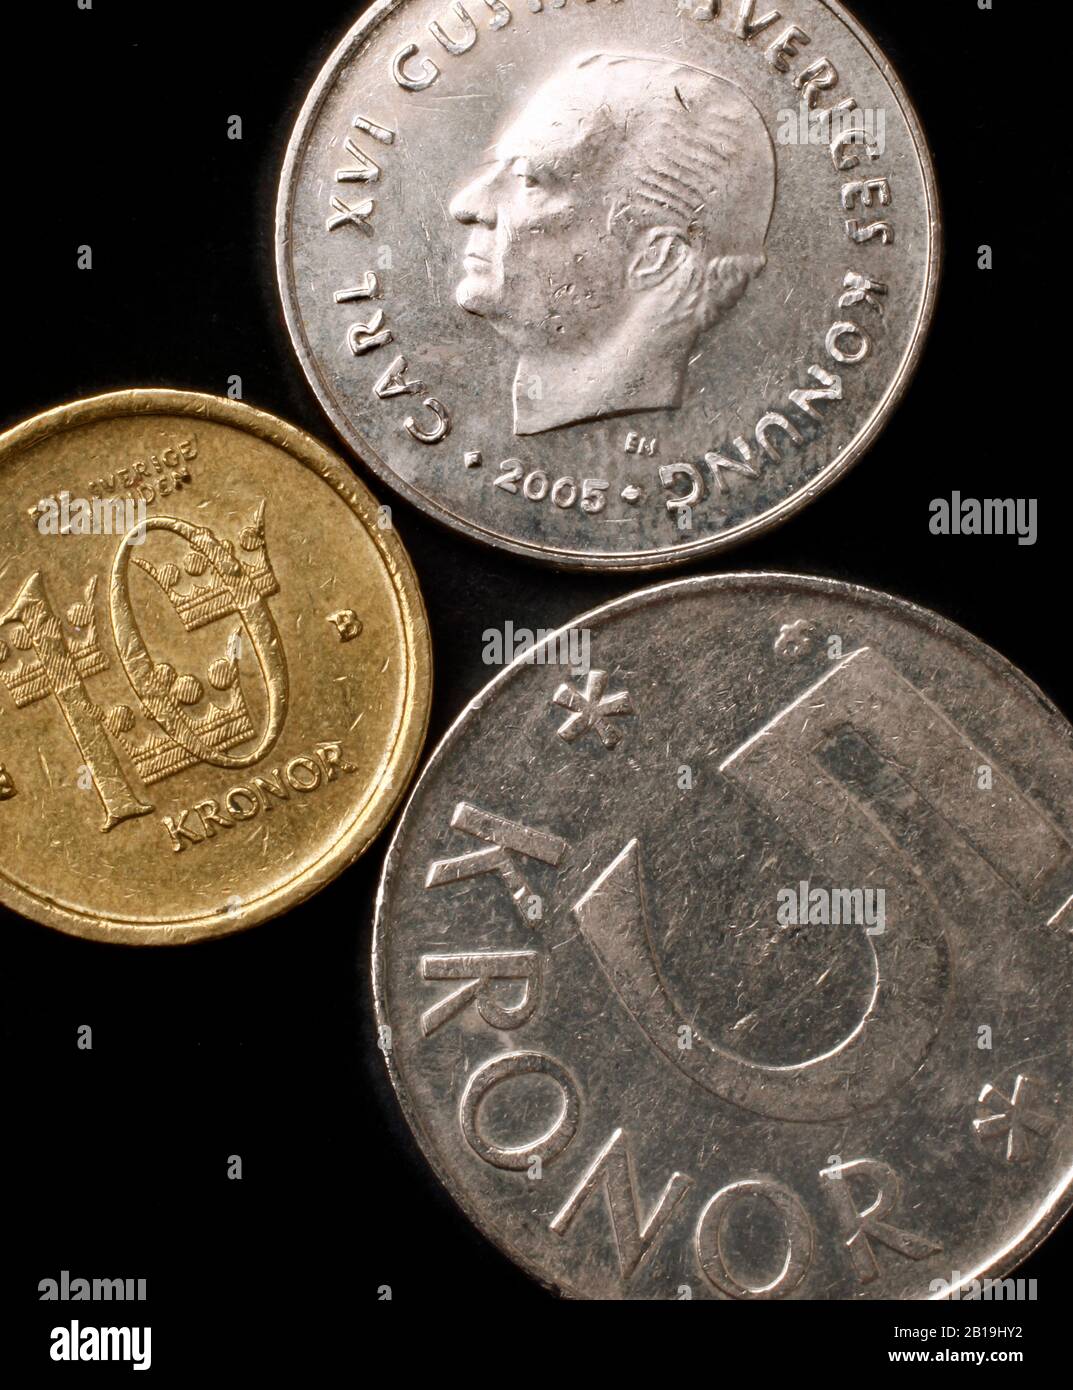 Dieci corone svedesi, una corona svedese e una moneta da cinque corone.  Foto Jeppe Gustafsson Foto stock - Alamy